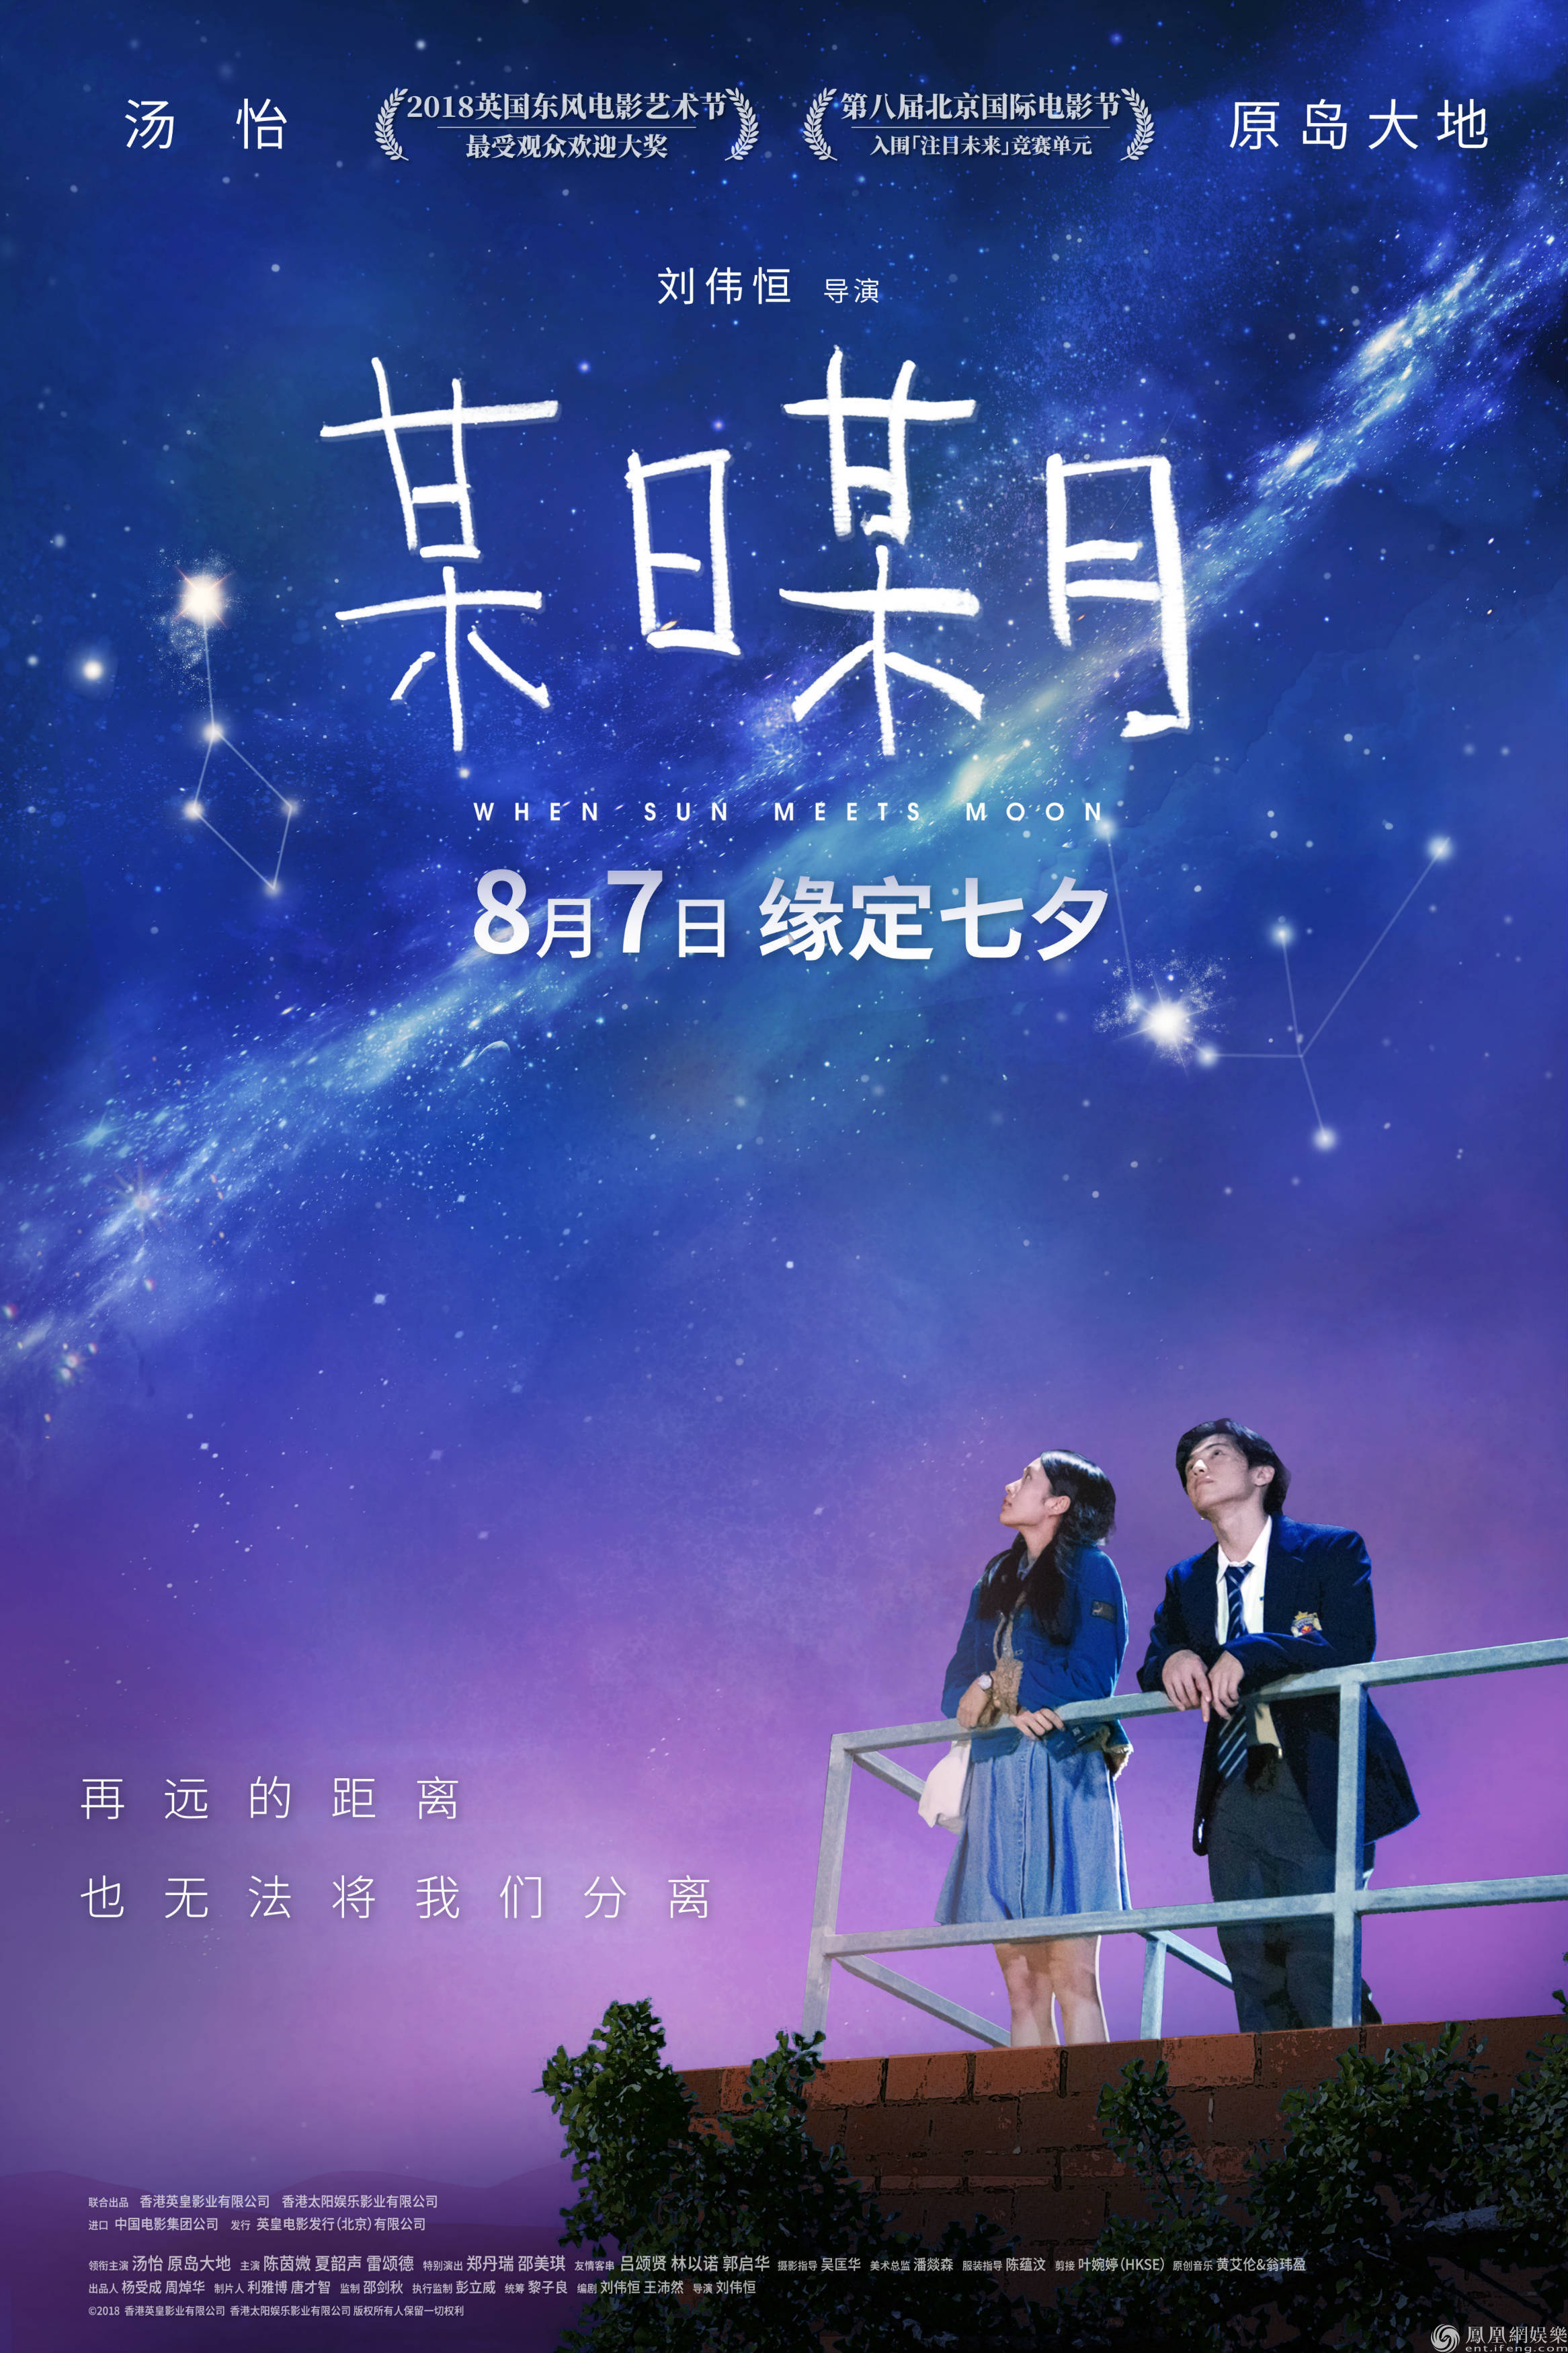 某日某月 定档七夕首发预告8月7日浪漫甜蜜一夏 凤凰网